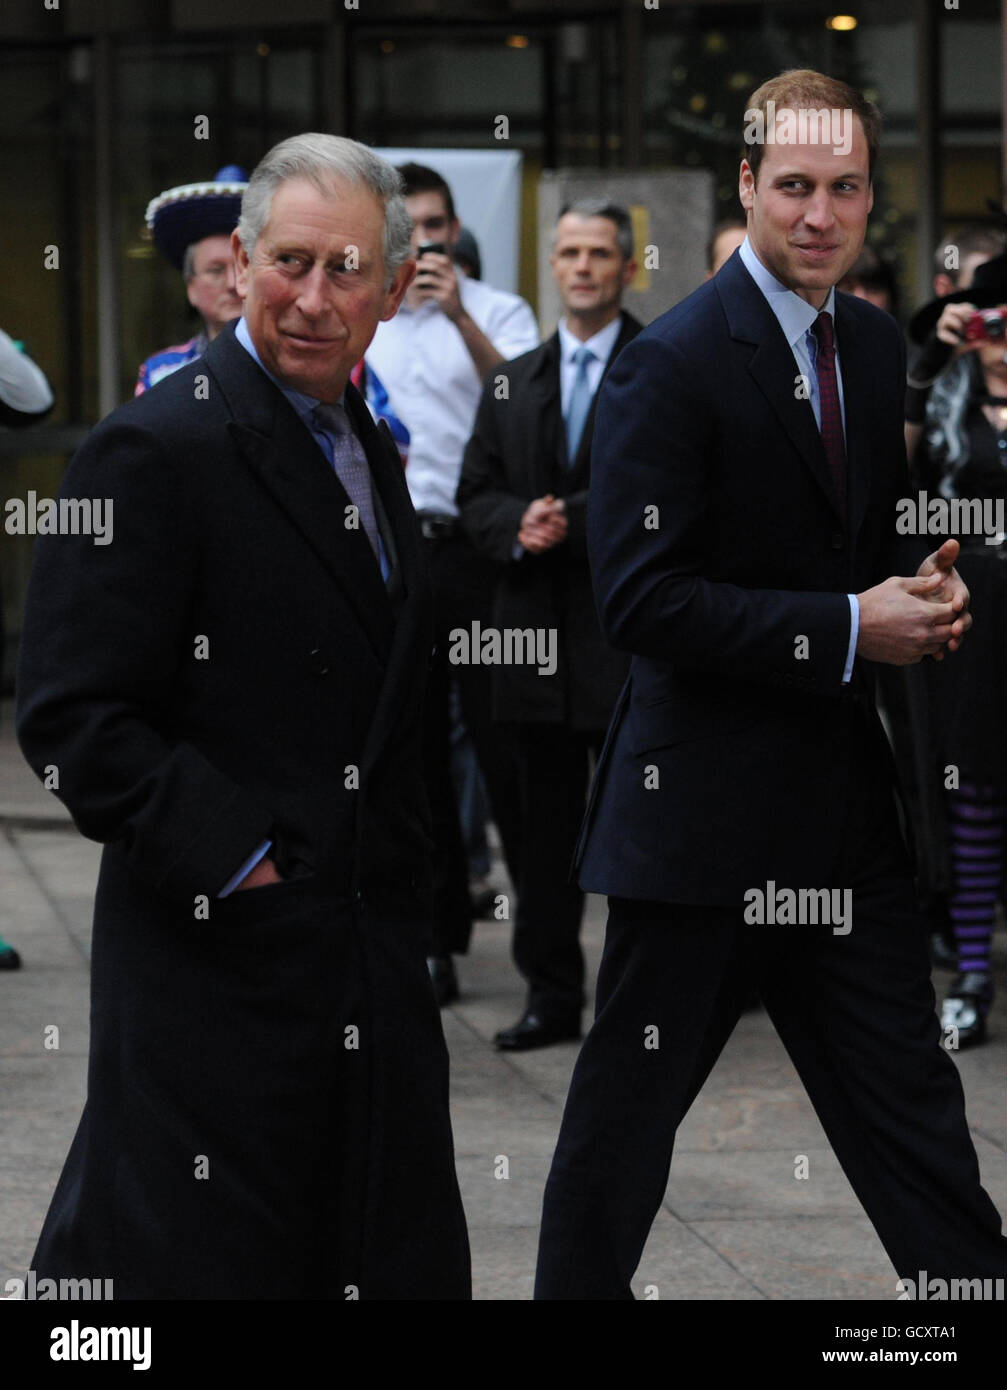 Le Prince de Galles et le Prince William voient des membres du personnel vêtus pour une œuvre de charité chez le courtier interdistributeur ICAP lorsqu'il arrive pour la Journée annuelle des œuvres caritatives de l'ICAP à Londres. Banque D'Images